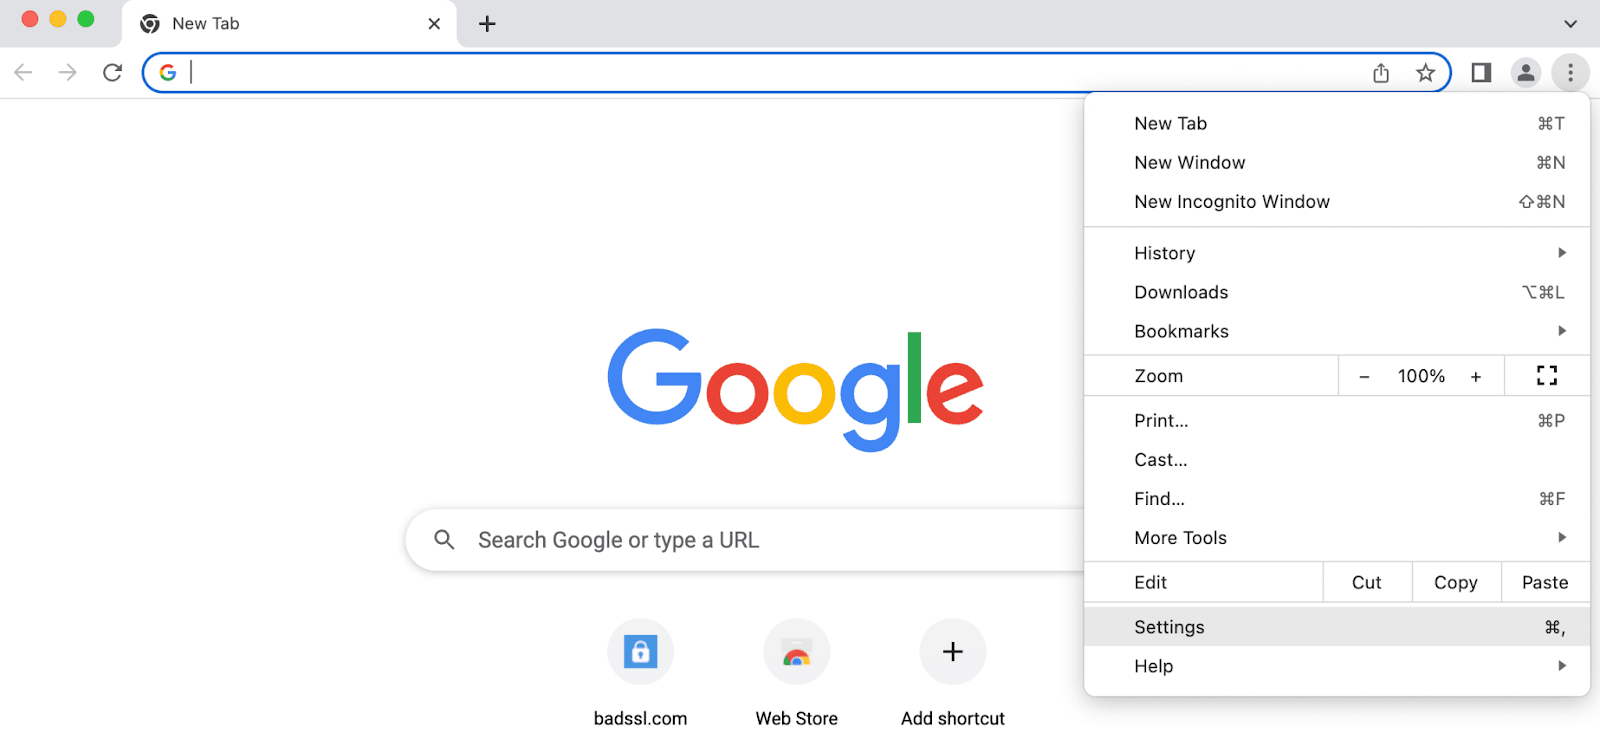 Klik op de drie stippen om de Google Chrome instellingen te openen